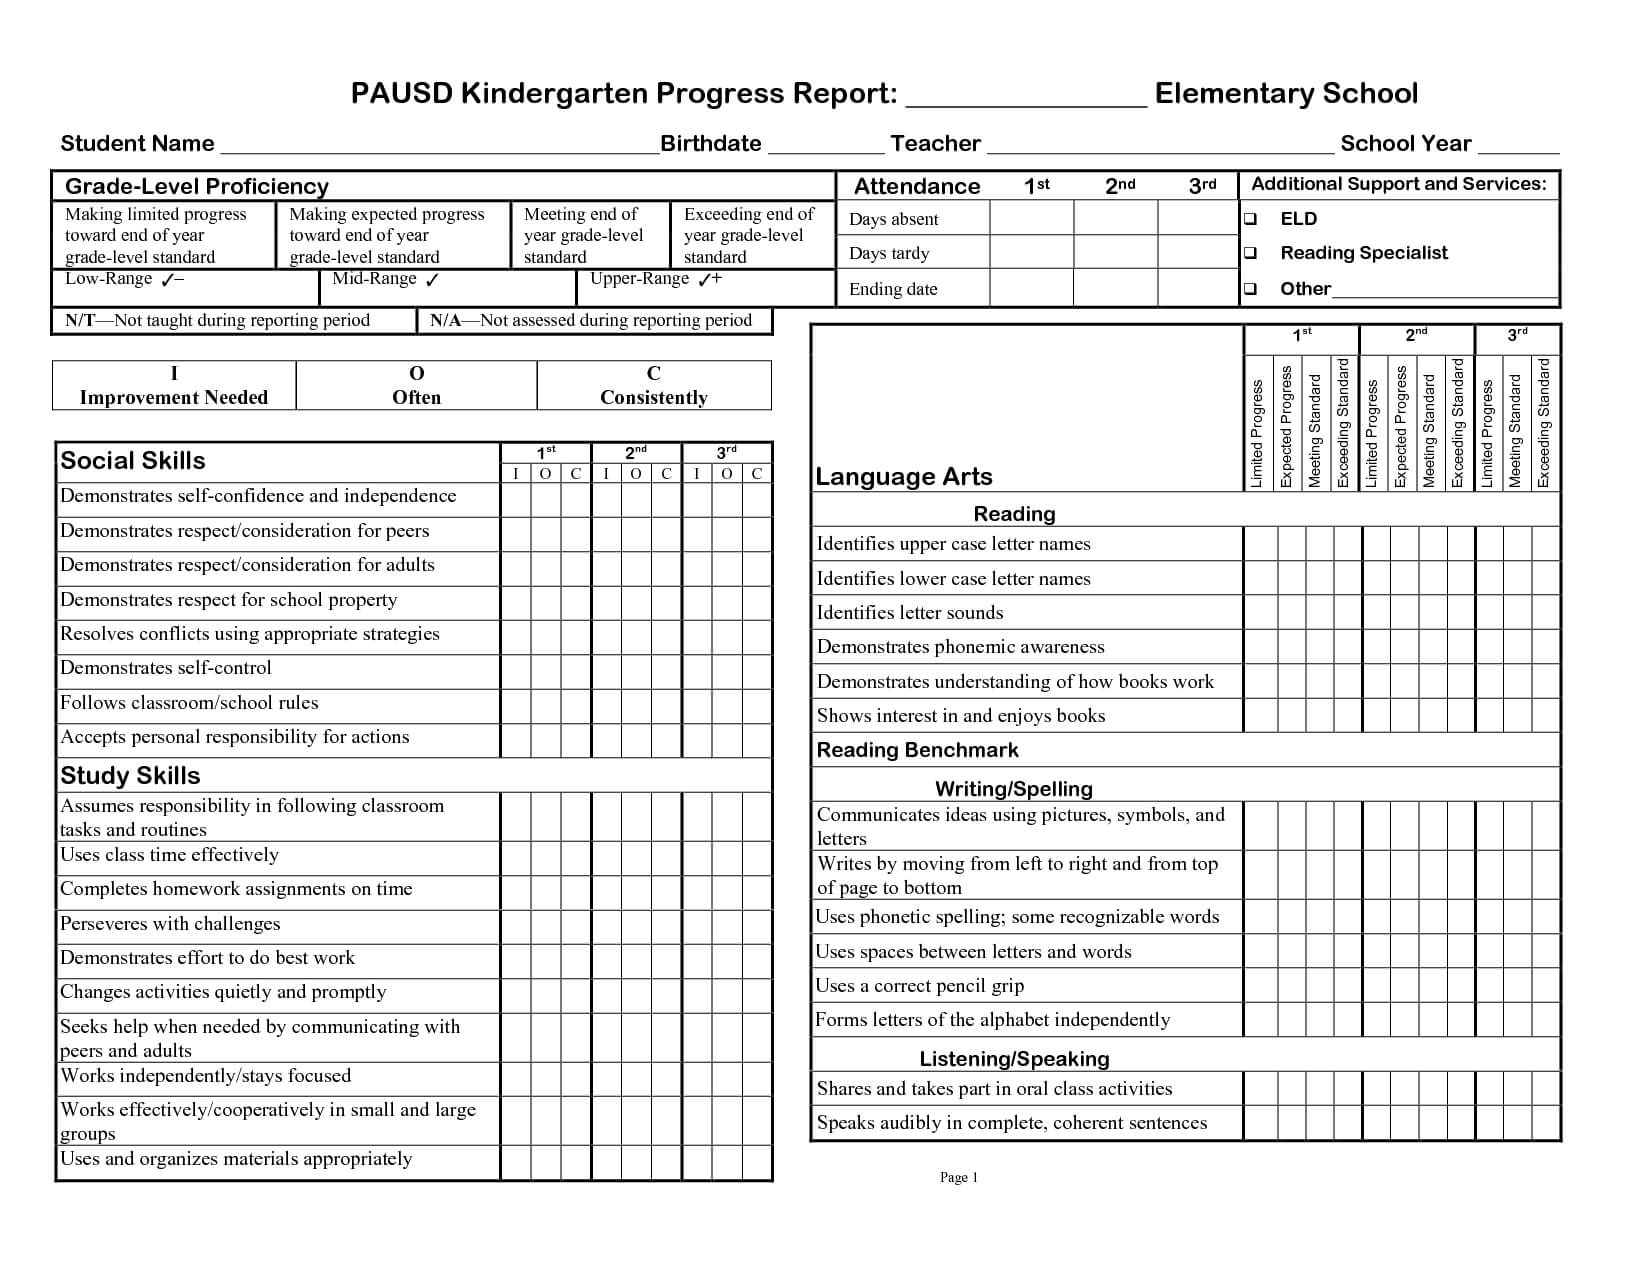 Kindergarten Social Skills Progress Report Blank Templates With Regard To Preschool Progress Report Template